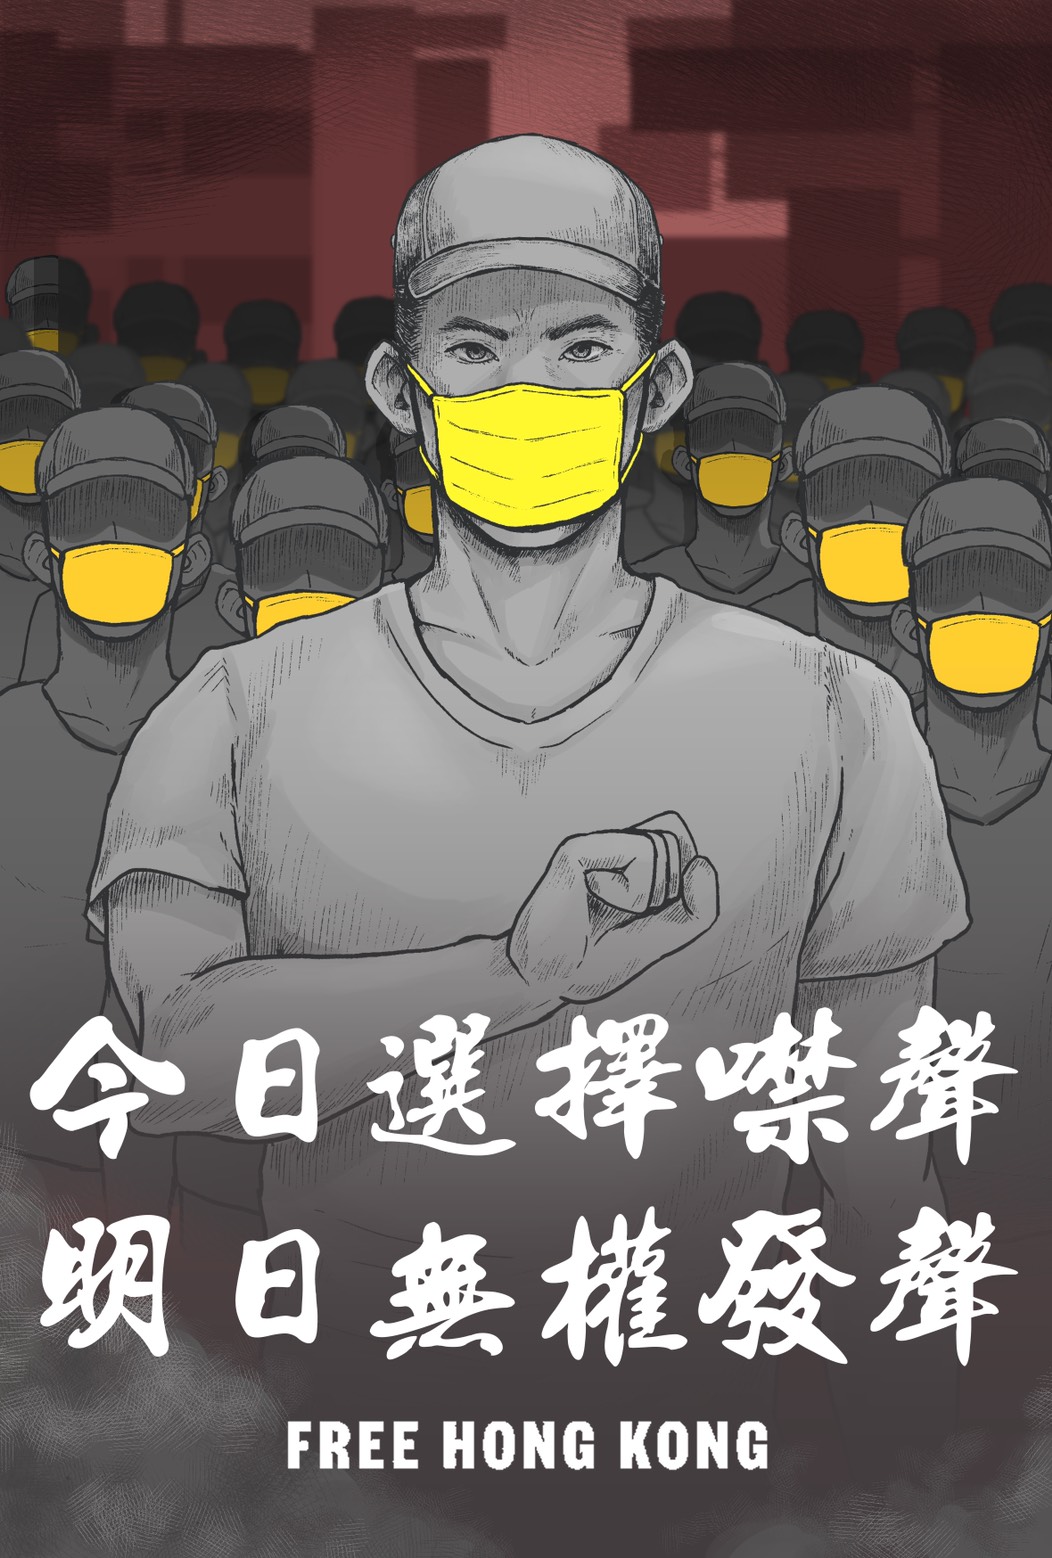 齊撐香港，反對戒嚴.jpg